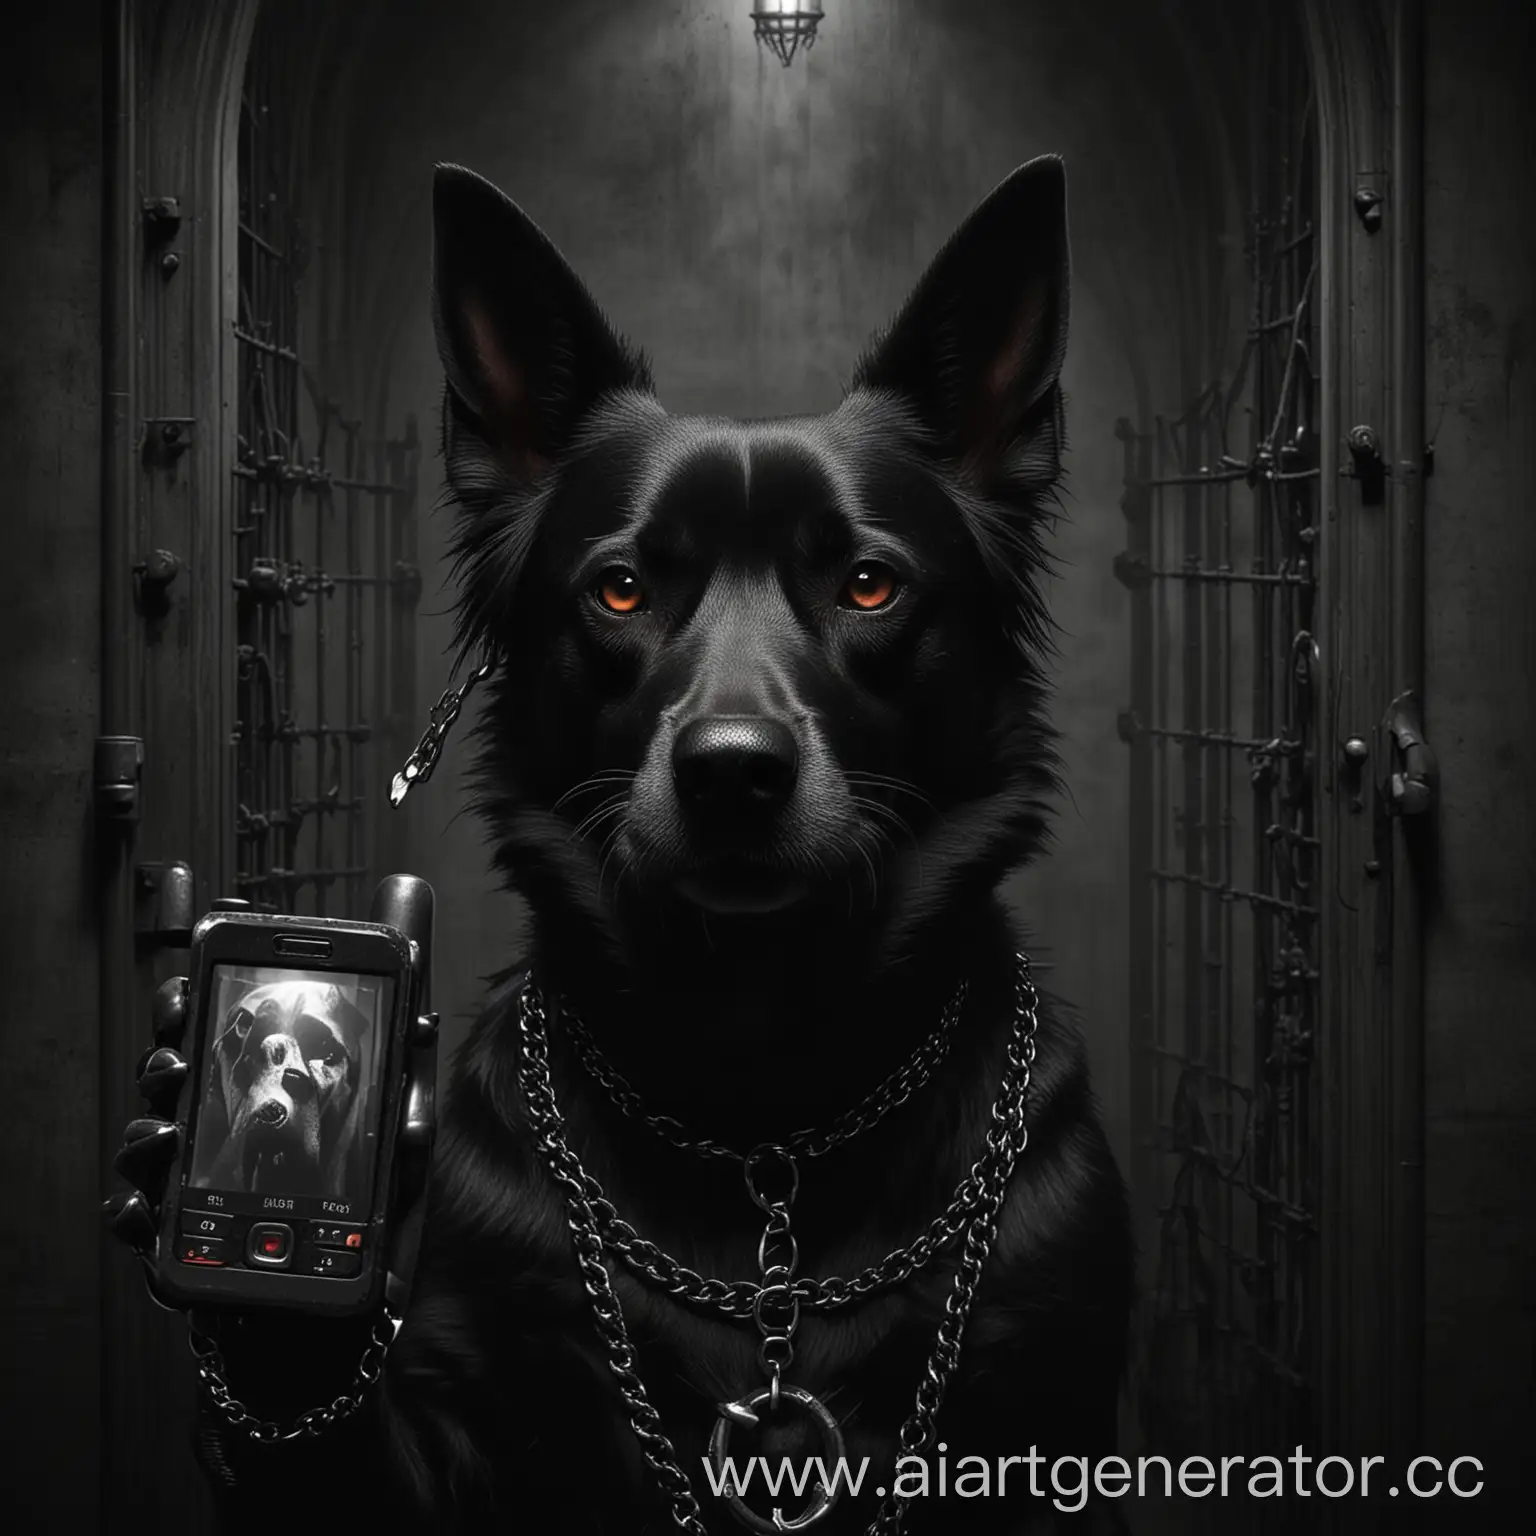 мрачная зловещая картинка злой готической собаки говорящей по готически мрачному сотовому телефону